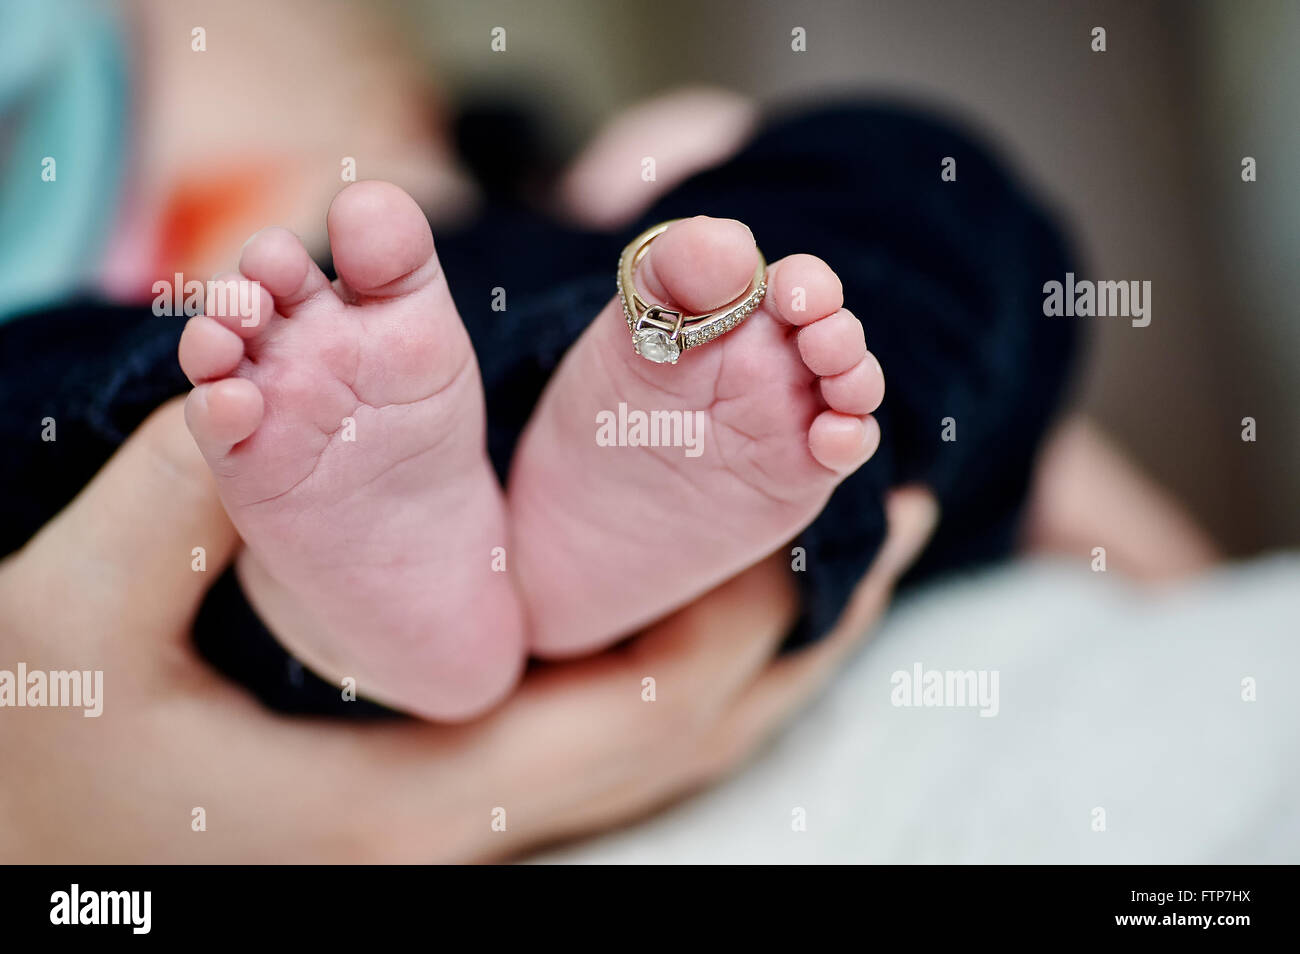 Le pied du nouveau-né dans la main avec les alliances sur le doigt Banque D'Images